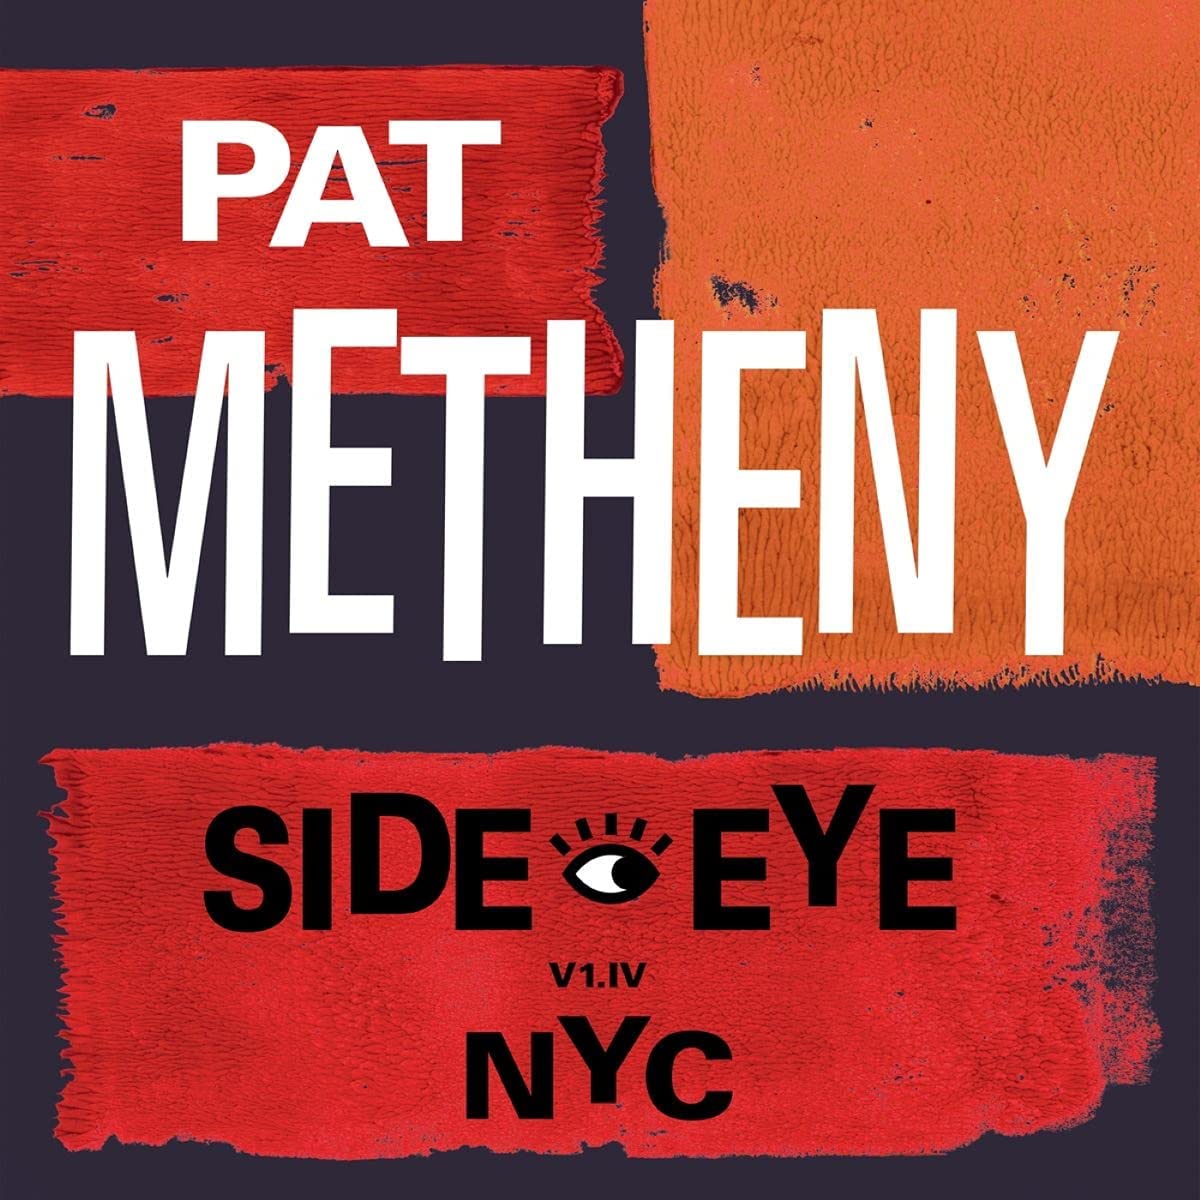 PAT METHENY - Side Eye - NYC (V1.IV) - CD